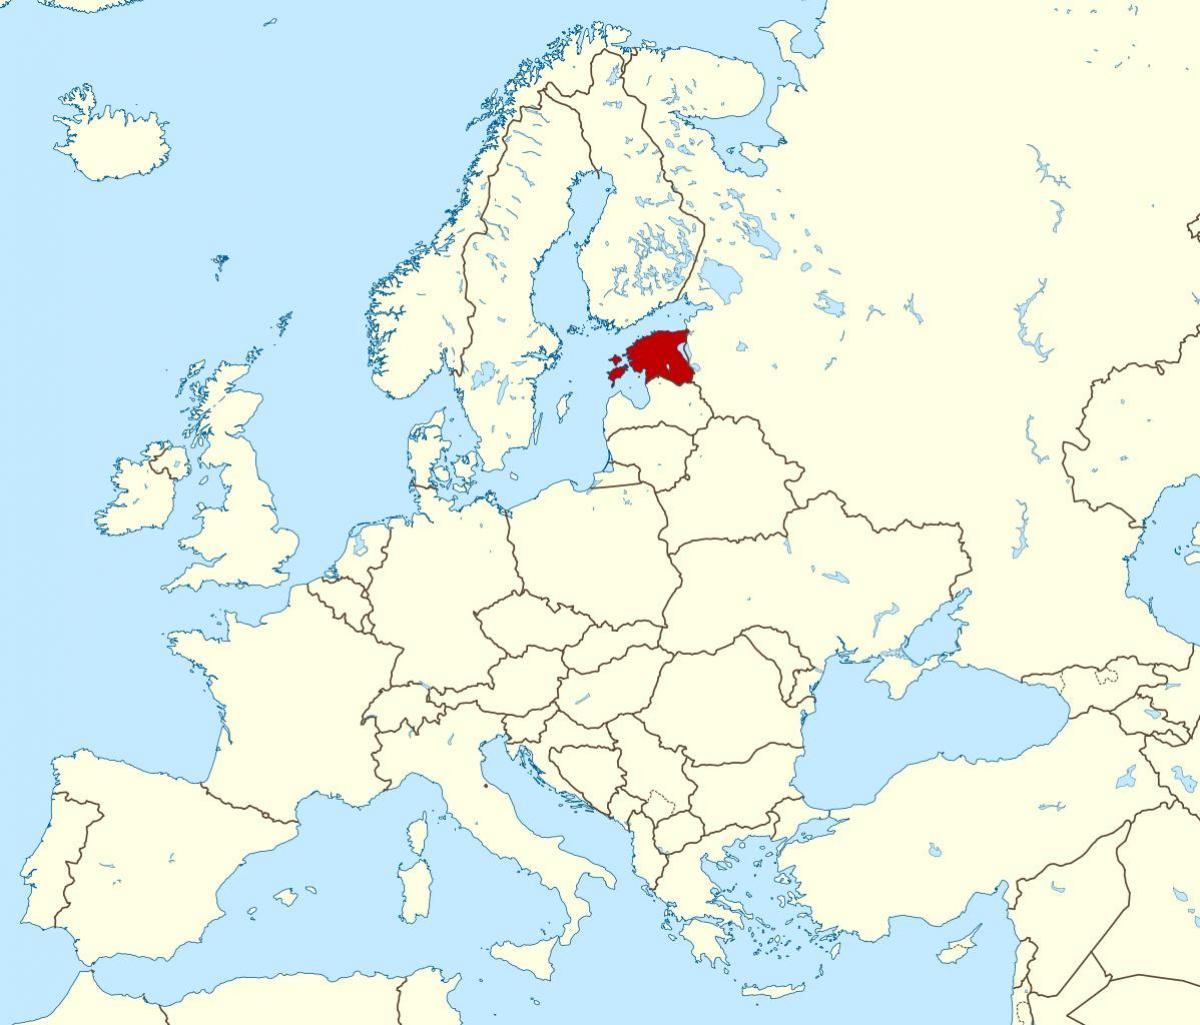 L'estonie emplacement sur la carte du monde